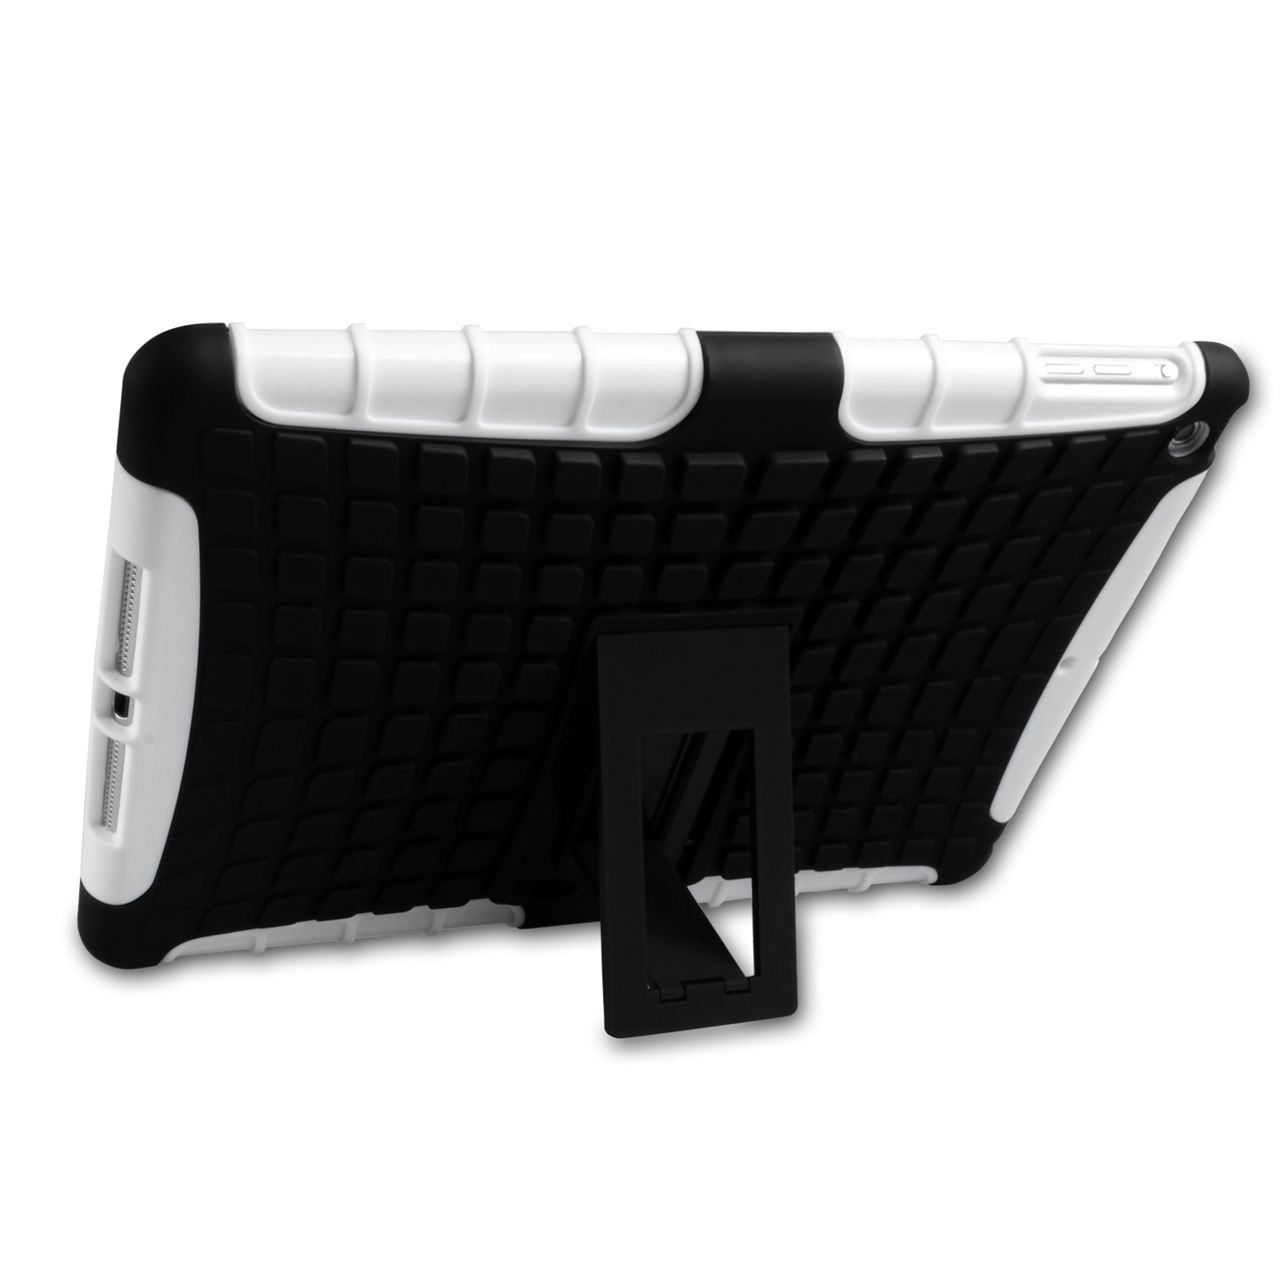 Caseflex iPad Air Tough Stand Cover - White